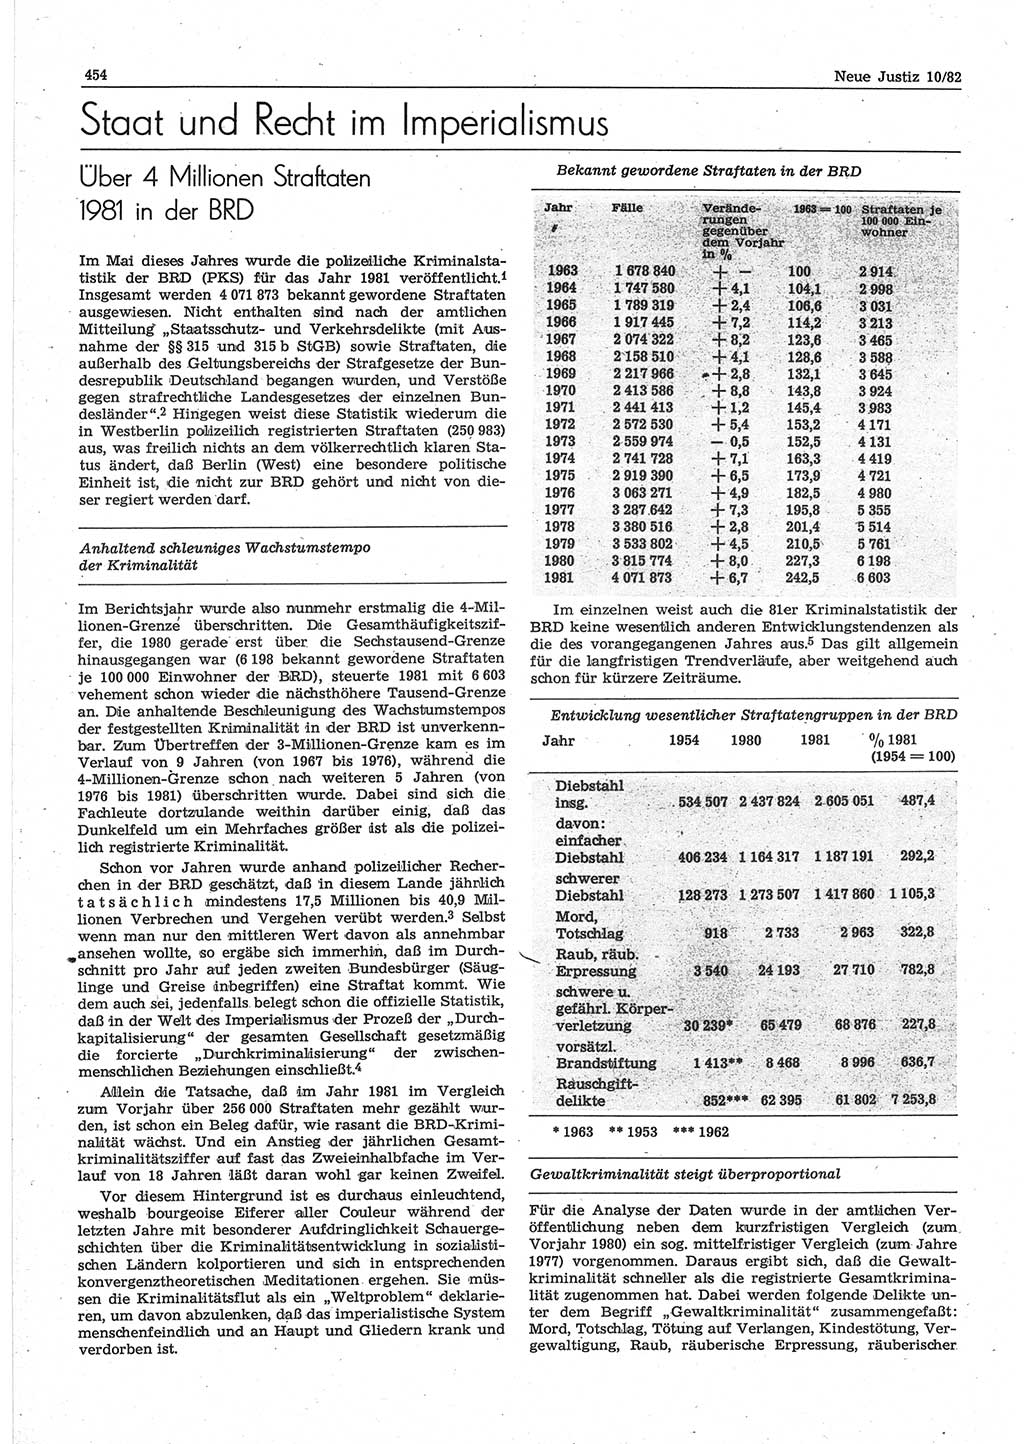 Neue Justiz (NJ), Zeitschrift für sozialistisches Recht und Gesetzlichkeit [Deutsche Demokratische Republik (DDR)], 36. Jahrgang 1982, Seite 454 (NJ DDR 1982, S. 454)